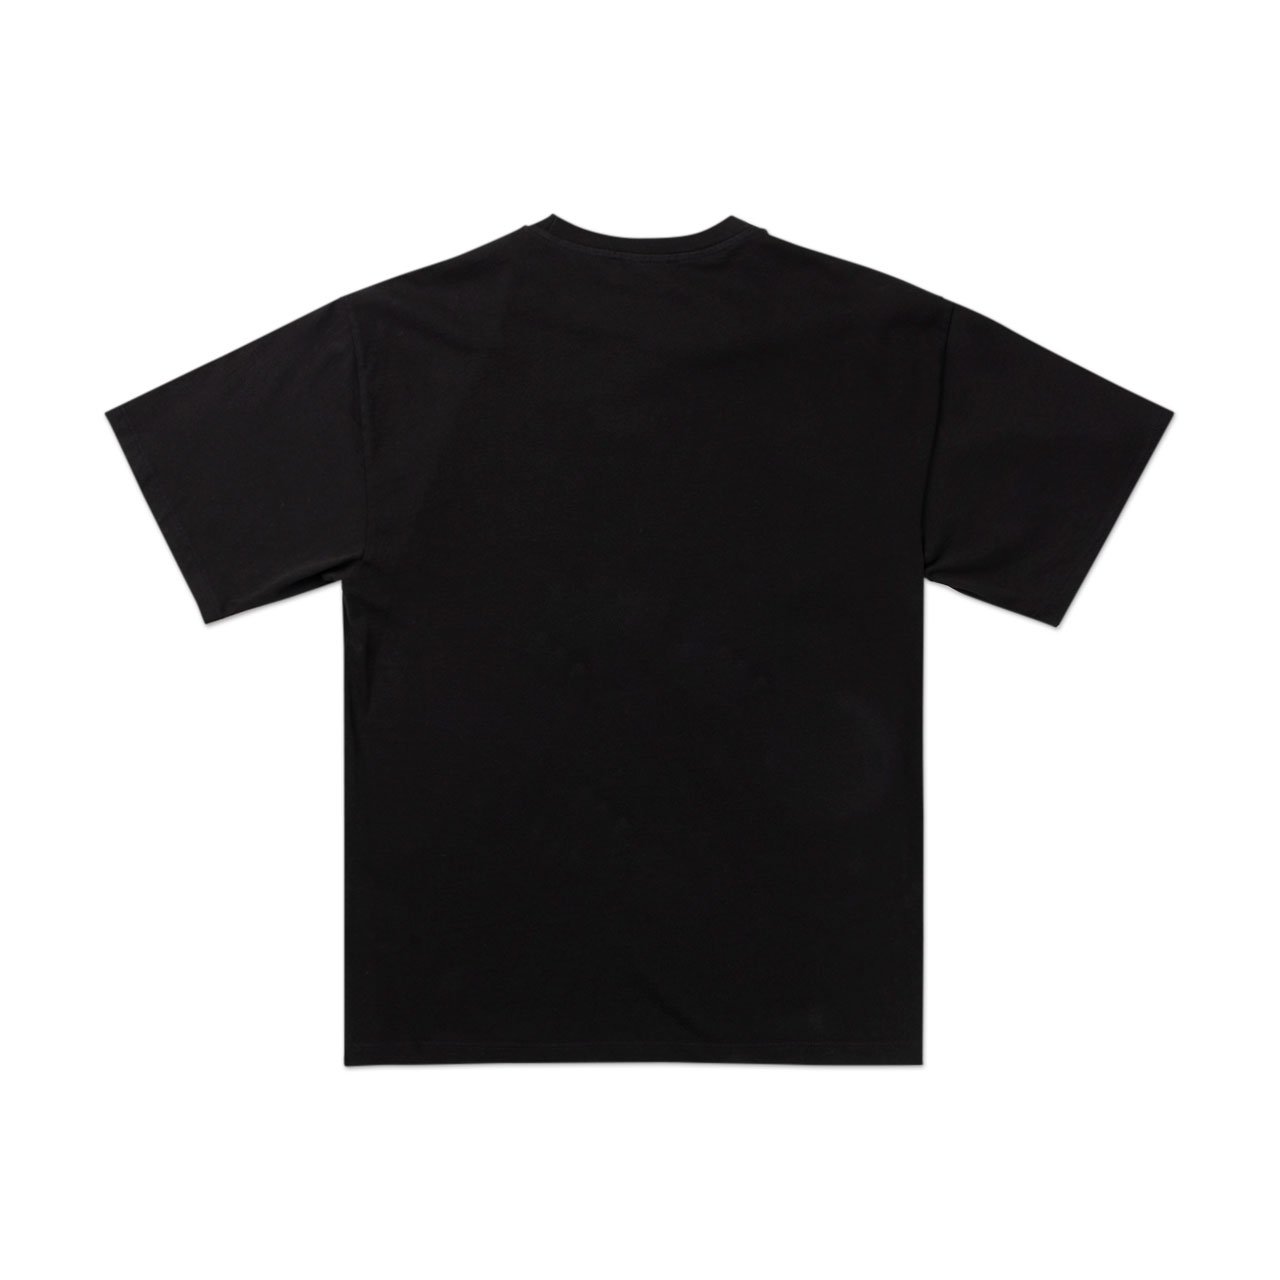 aries satan t-shirt (black) - fqar60004 - a.plus - Image - 2